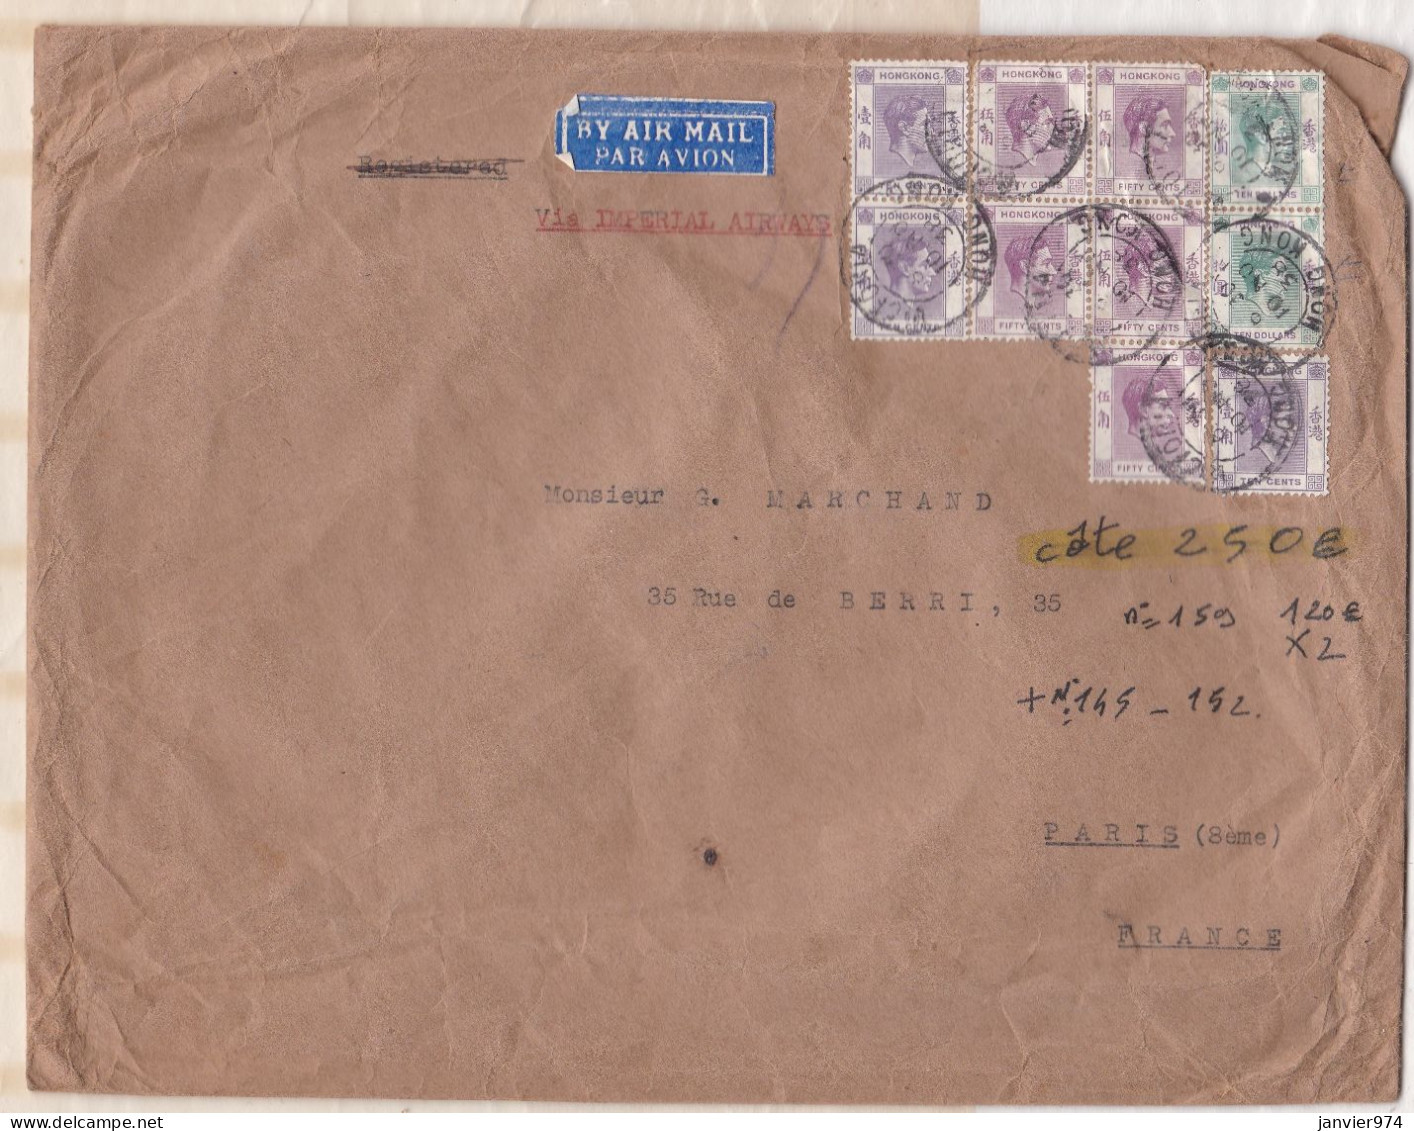 Hong Kong Enveloppe 1938 De G. Marchand Groupe – Chine Pour Paris . 10 Timbres + Cachet En Cire. - Altri & Non Classificati